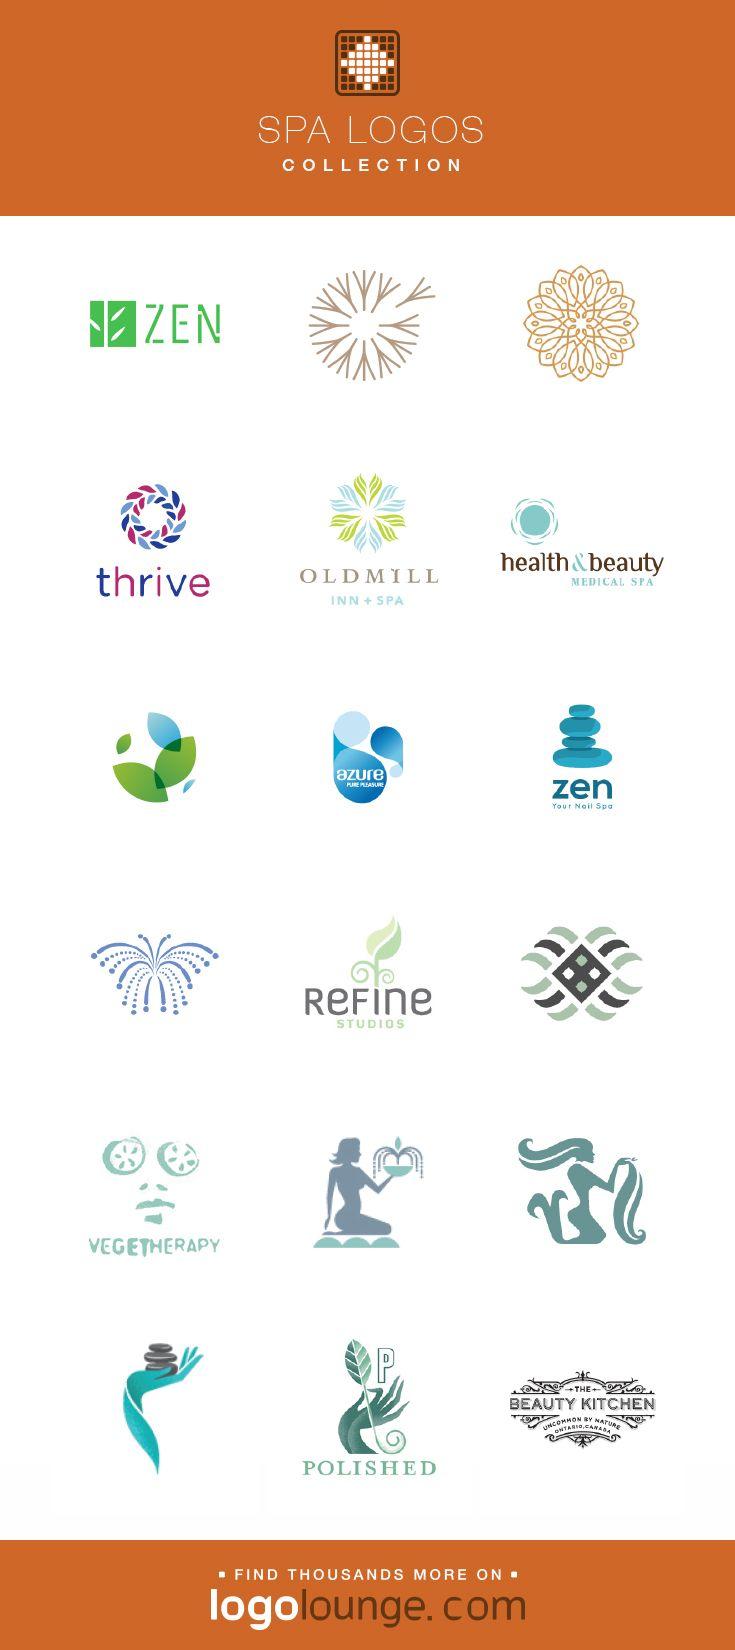 Zen Water Logo - Logo Collection : Spa vector logo designs. Zen, peace, fountain ...